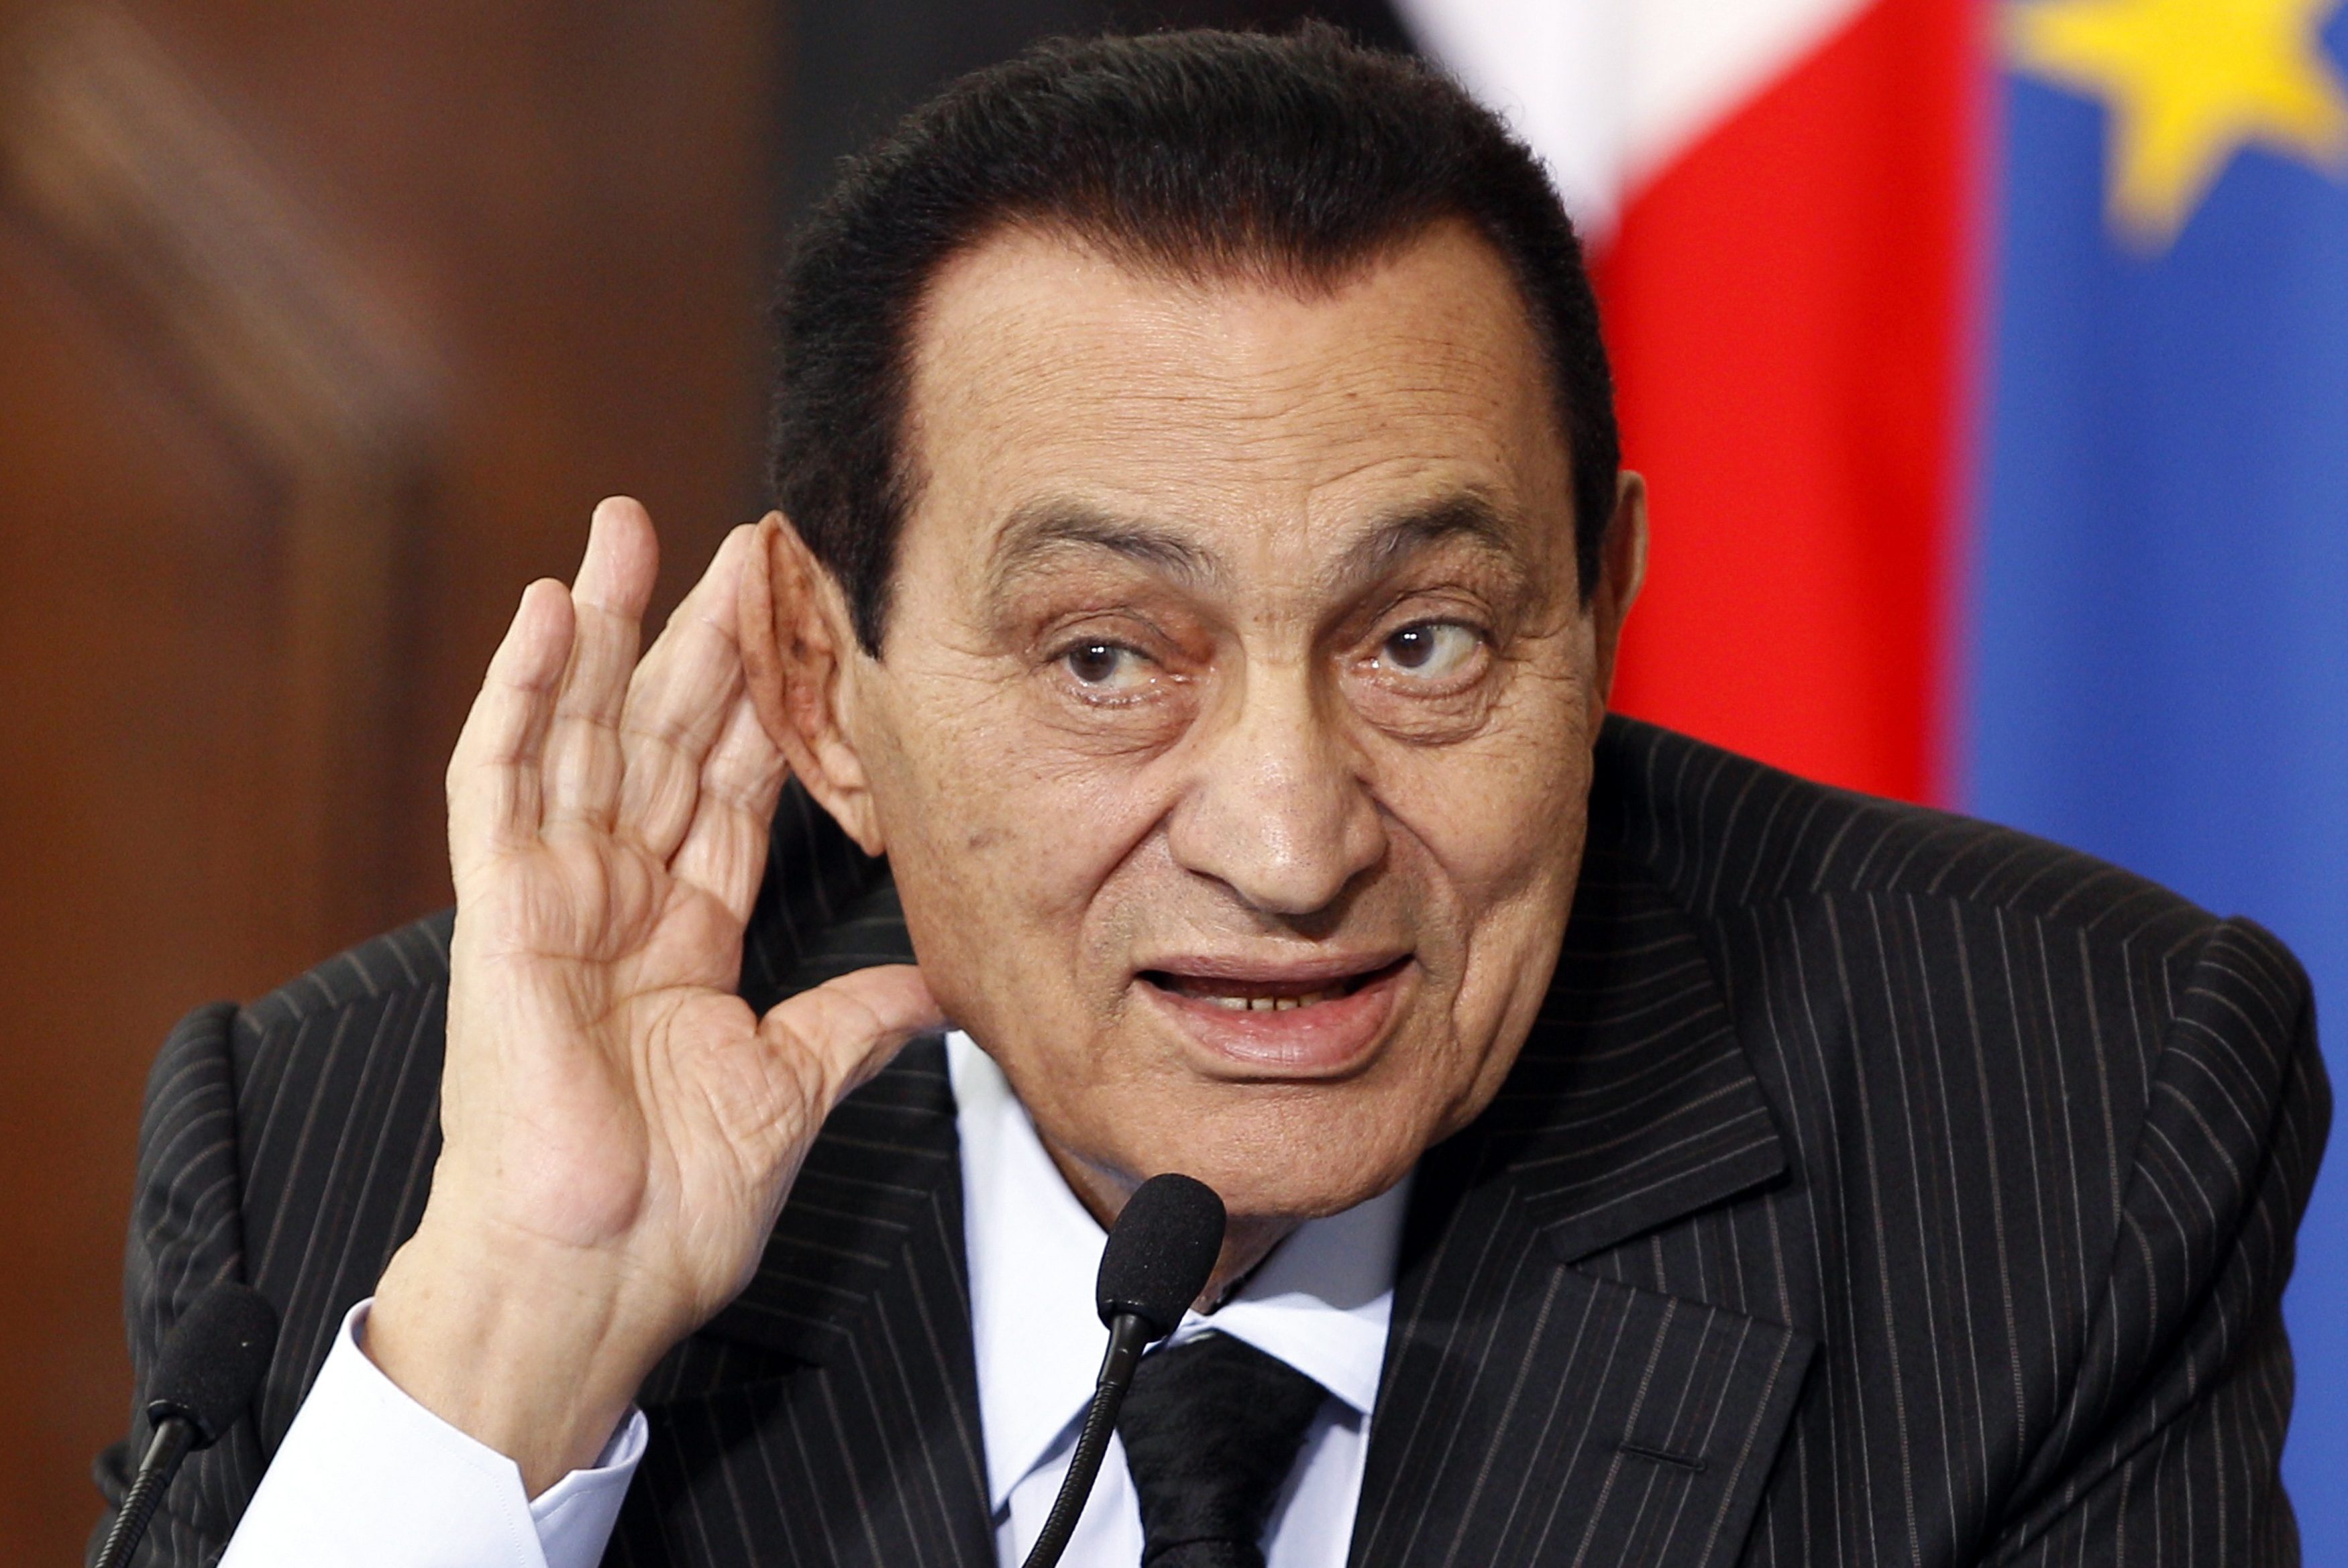 Απαγορεύεται η «έξοδος από την Αίγυπτο» για την οικογένεια Μουμπάρακ, τονίζει ο Στρατός